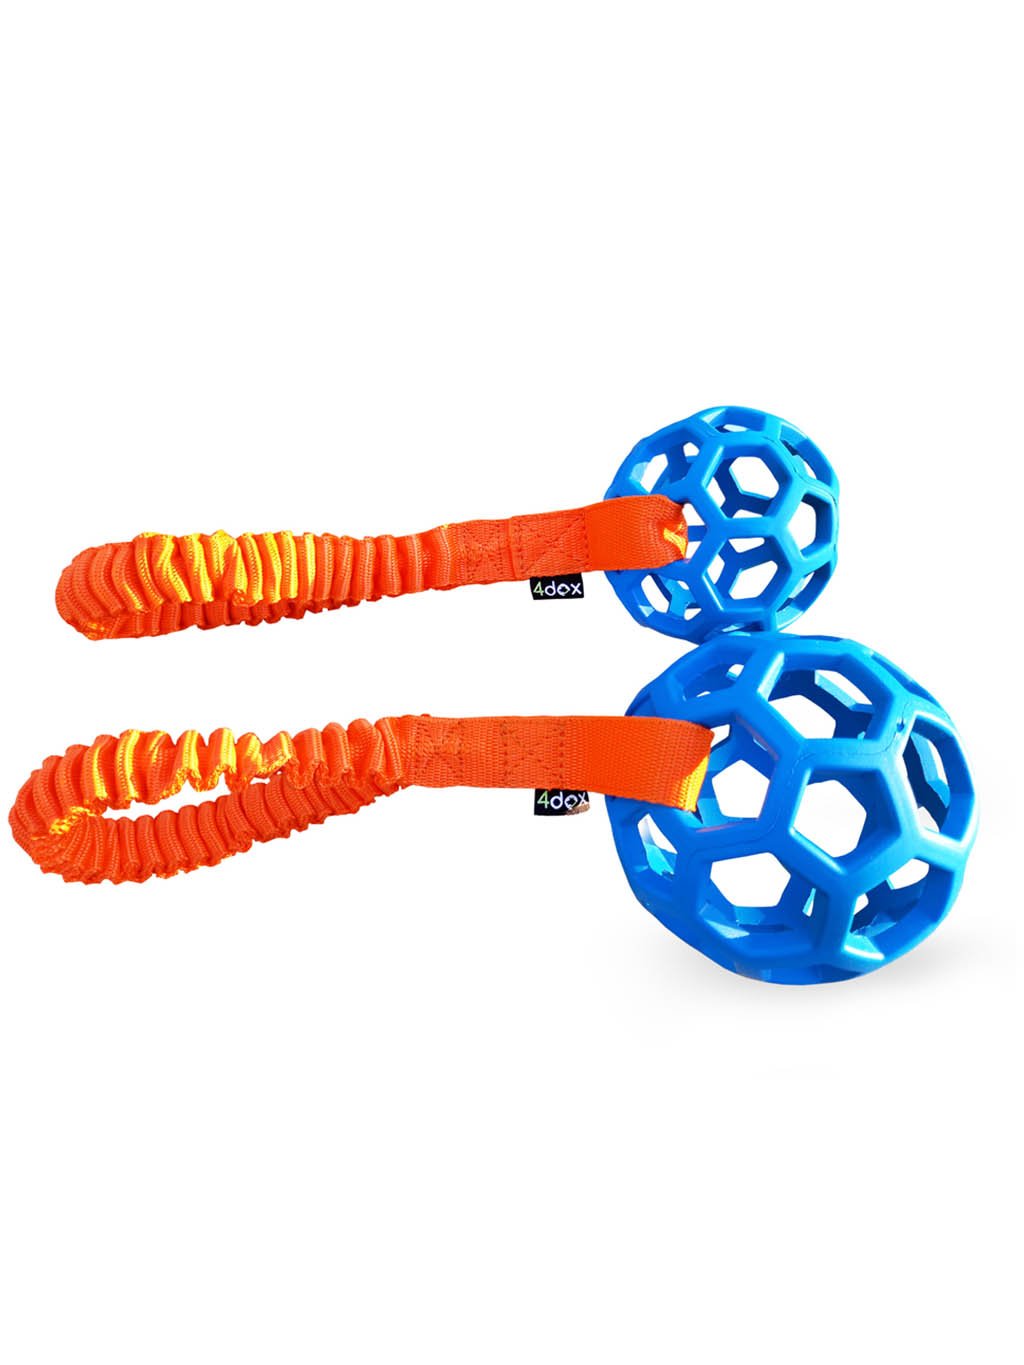 Přetahovadlo - děrovaný míč s amortizérem 8 cm modrá/oranž 4dox